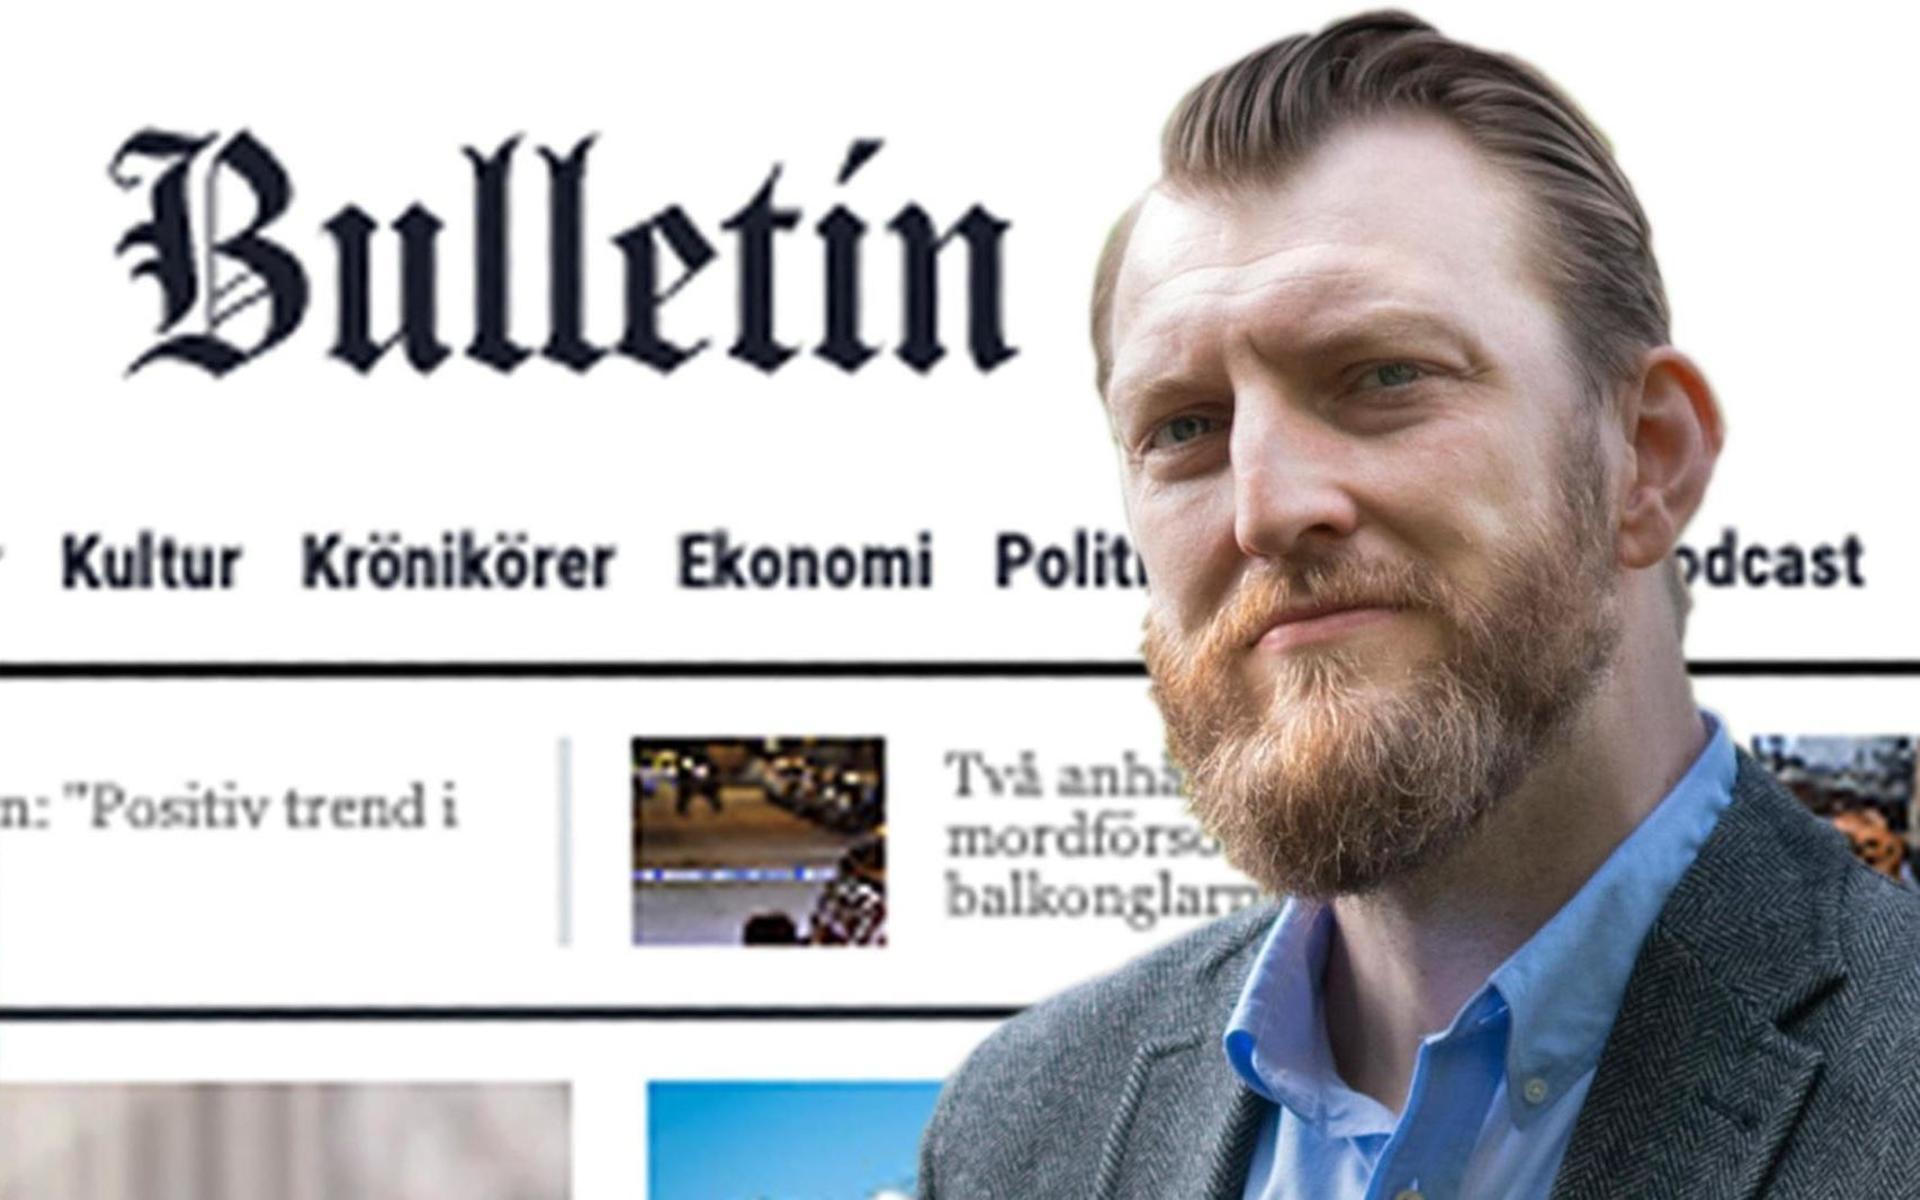 Bulletins chefredaktör Ivar Arpi och tidningens politiska chefredaktör Alice Teodorescu Måwe lämnar nu nättidningen, som det stormat kring rejält den senaste tiden.